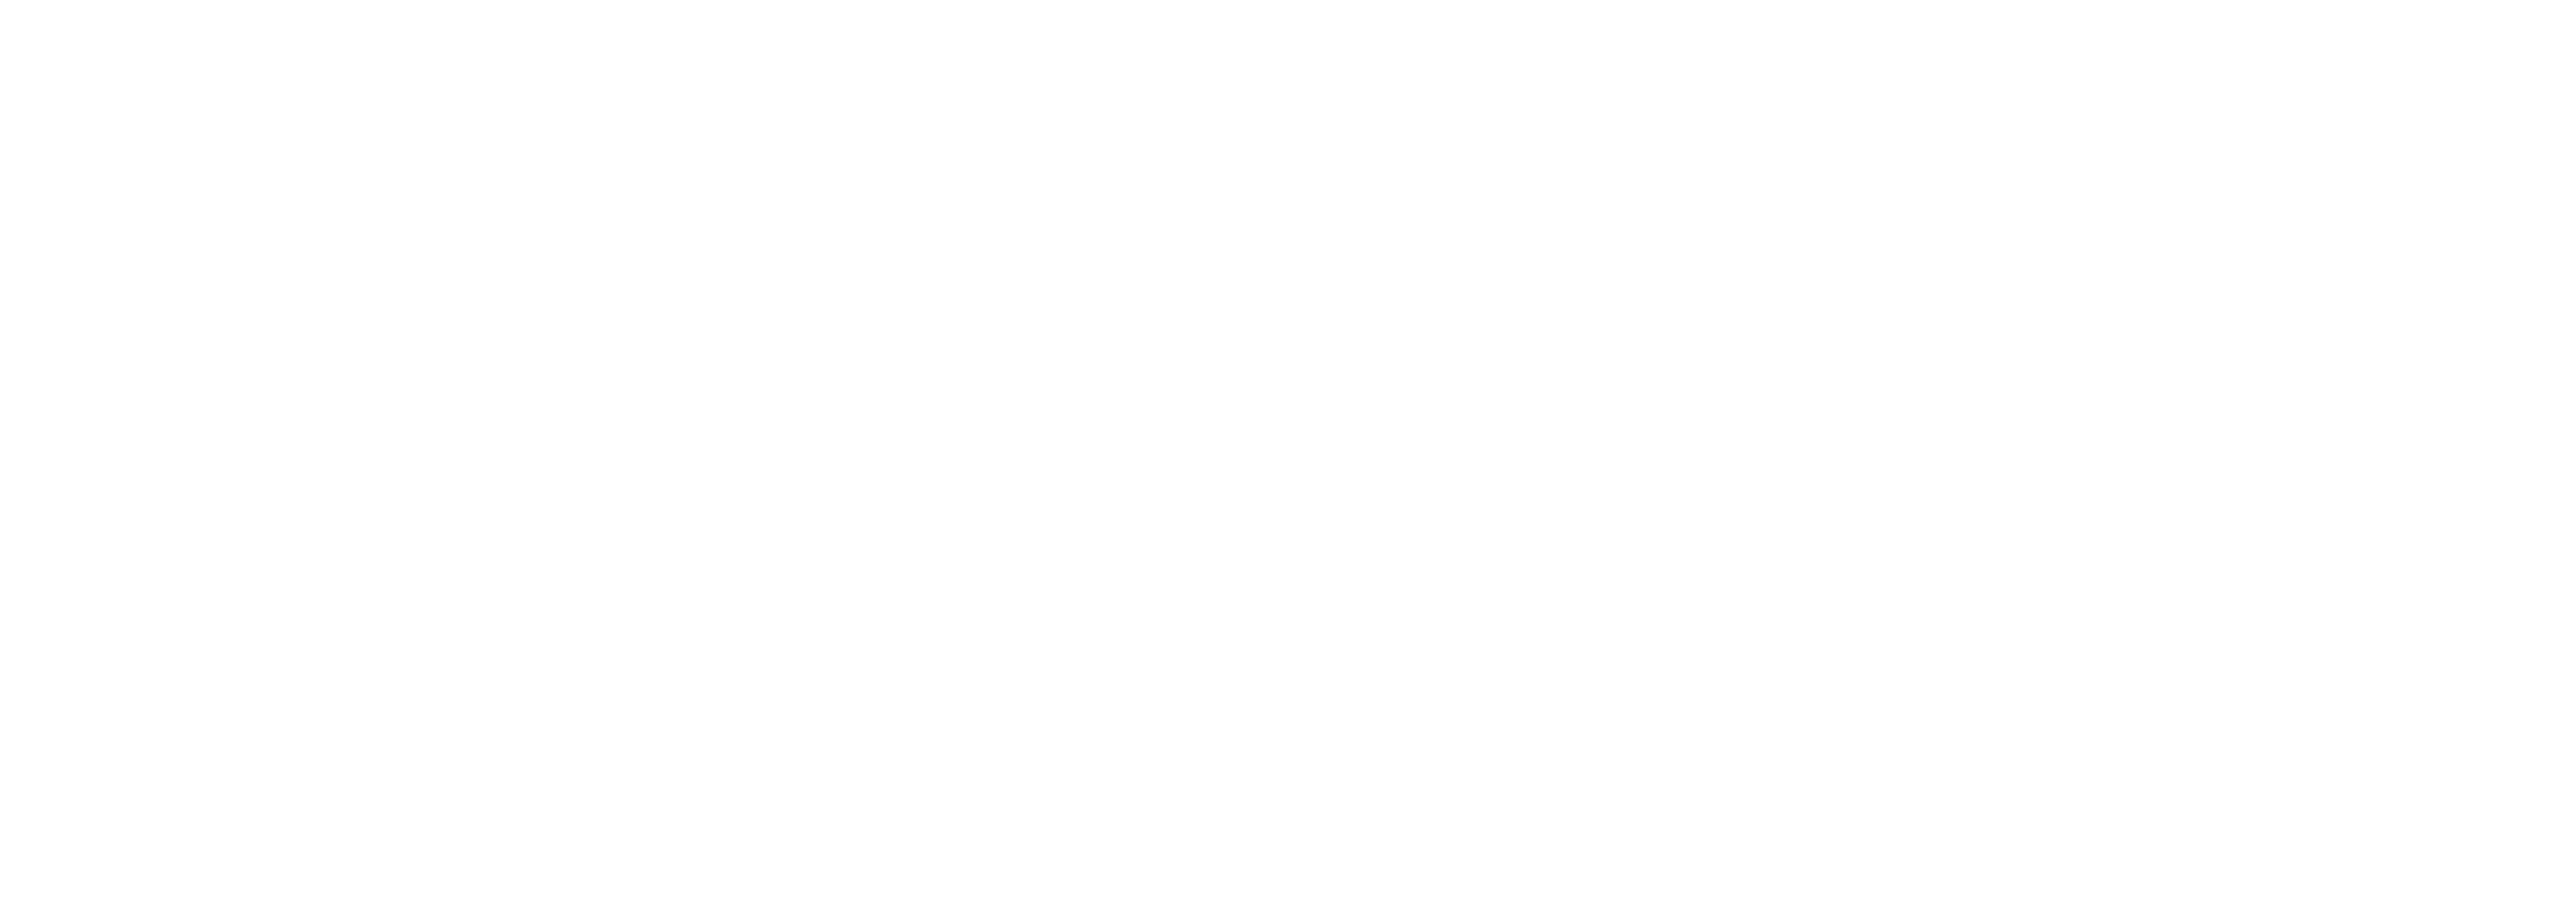 (c) Portaldoequilibrium.com.br